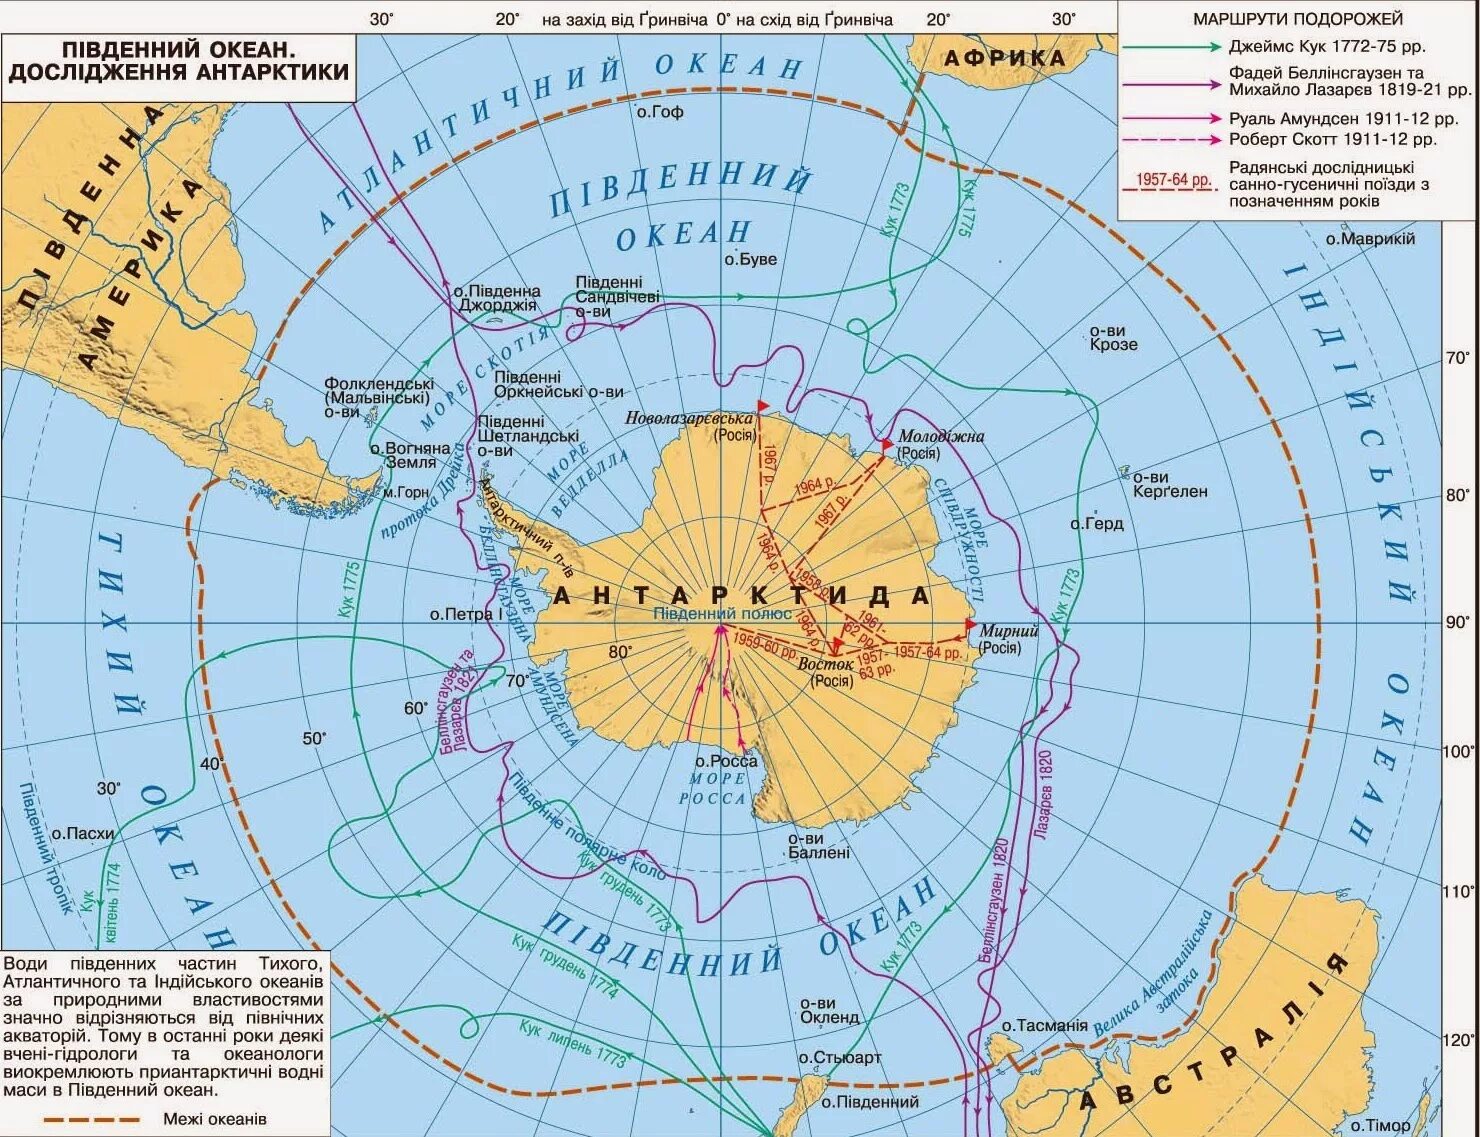 Сколько стран расположено на территории антарктиды. Показать на карте Северный Ледовитый океан и Антарктиду. Море Беллинсгаузена — ; море Амундсена —. Границы Южного океана на карте.